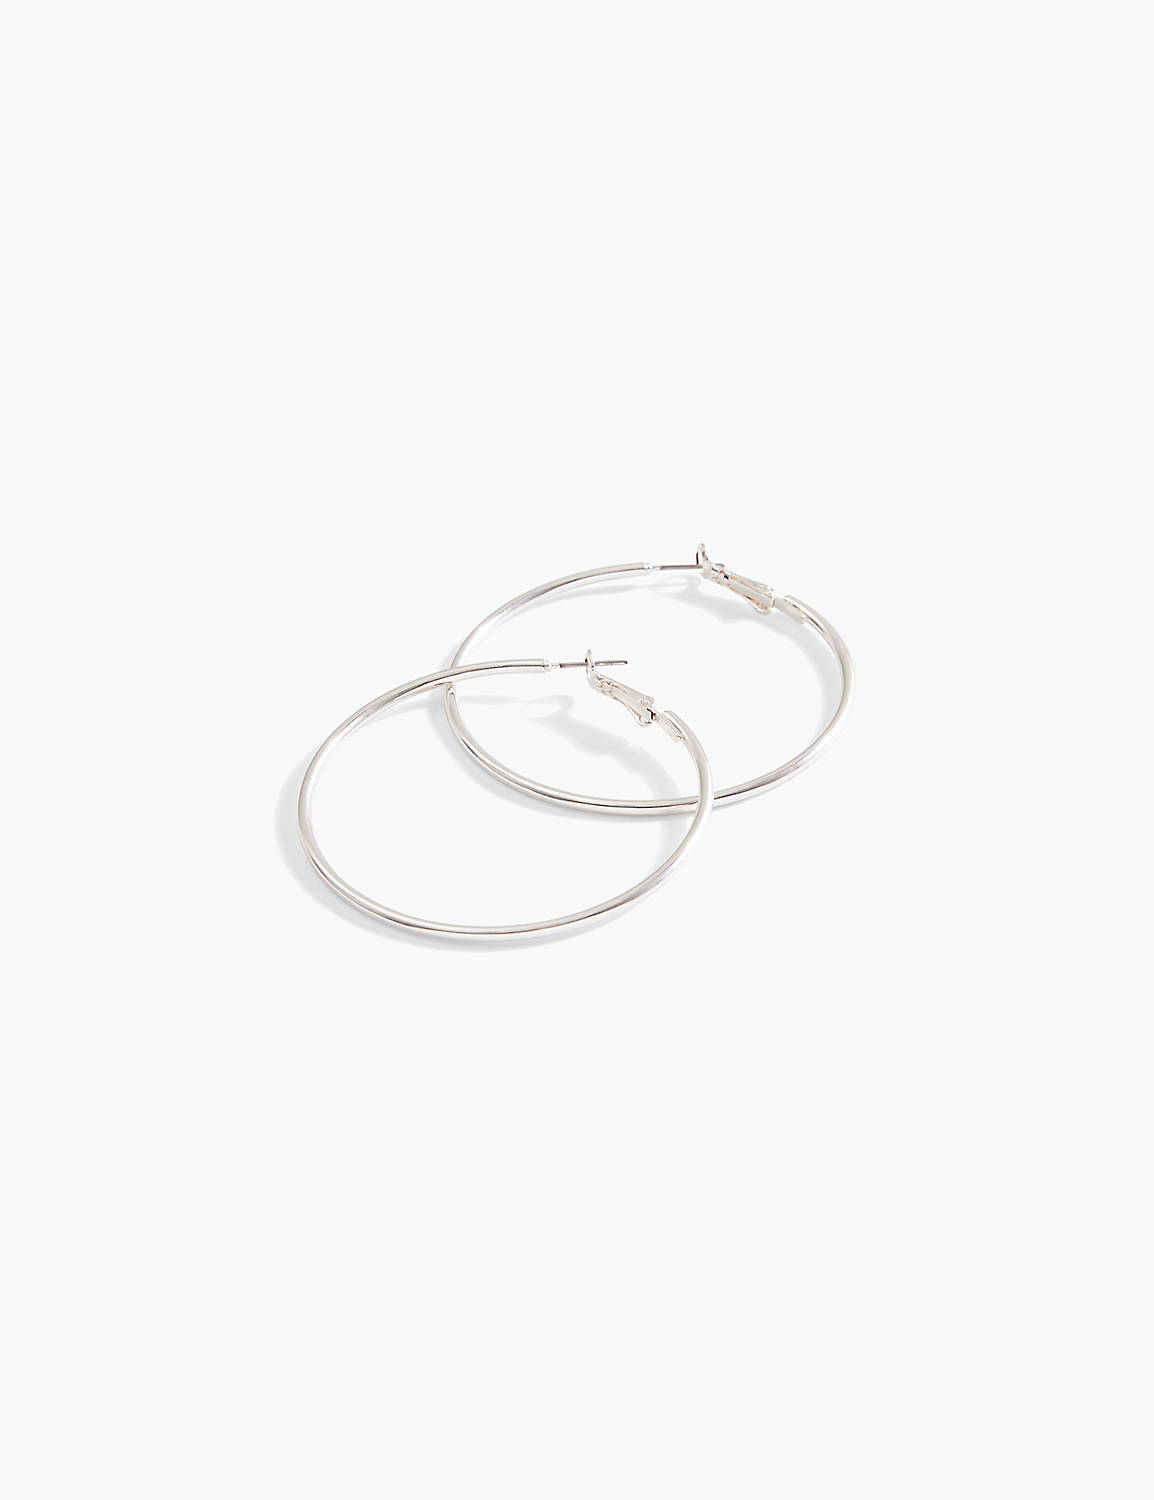 Large Hoop Earrings Product Image 1